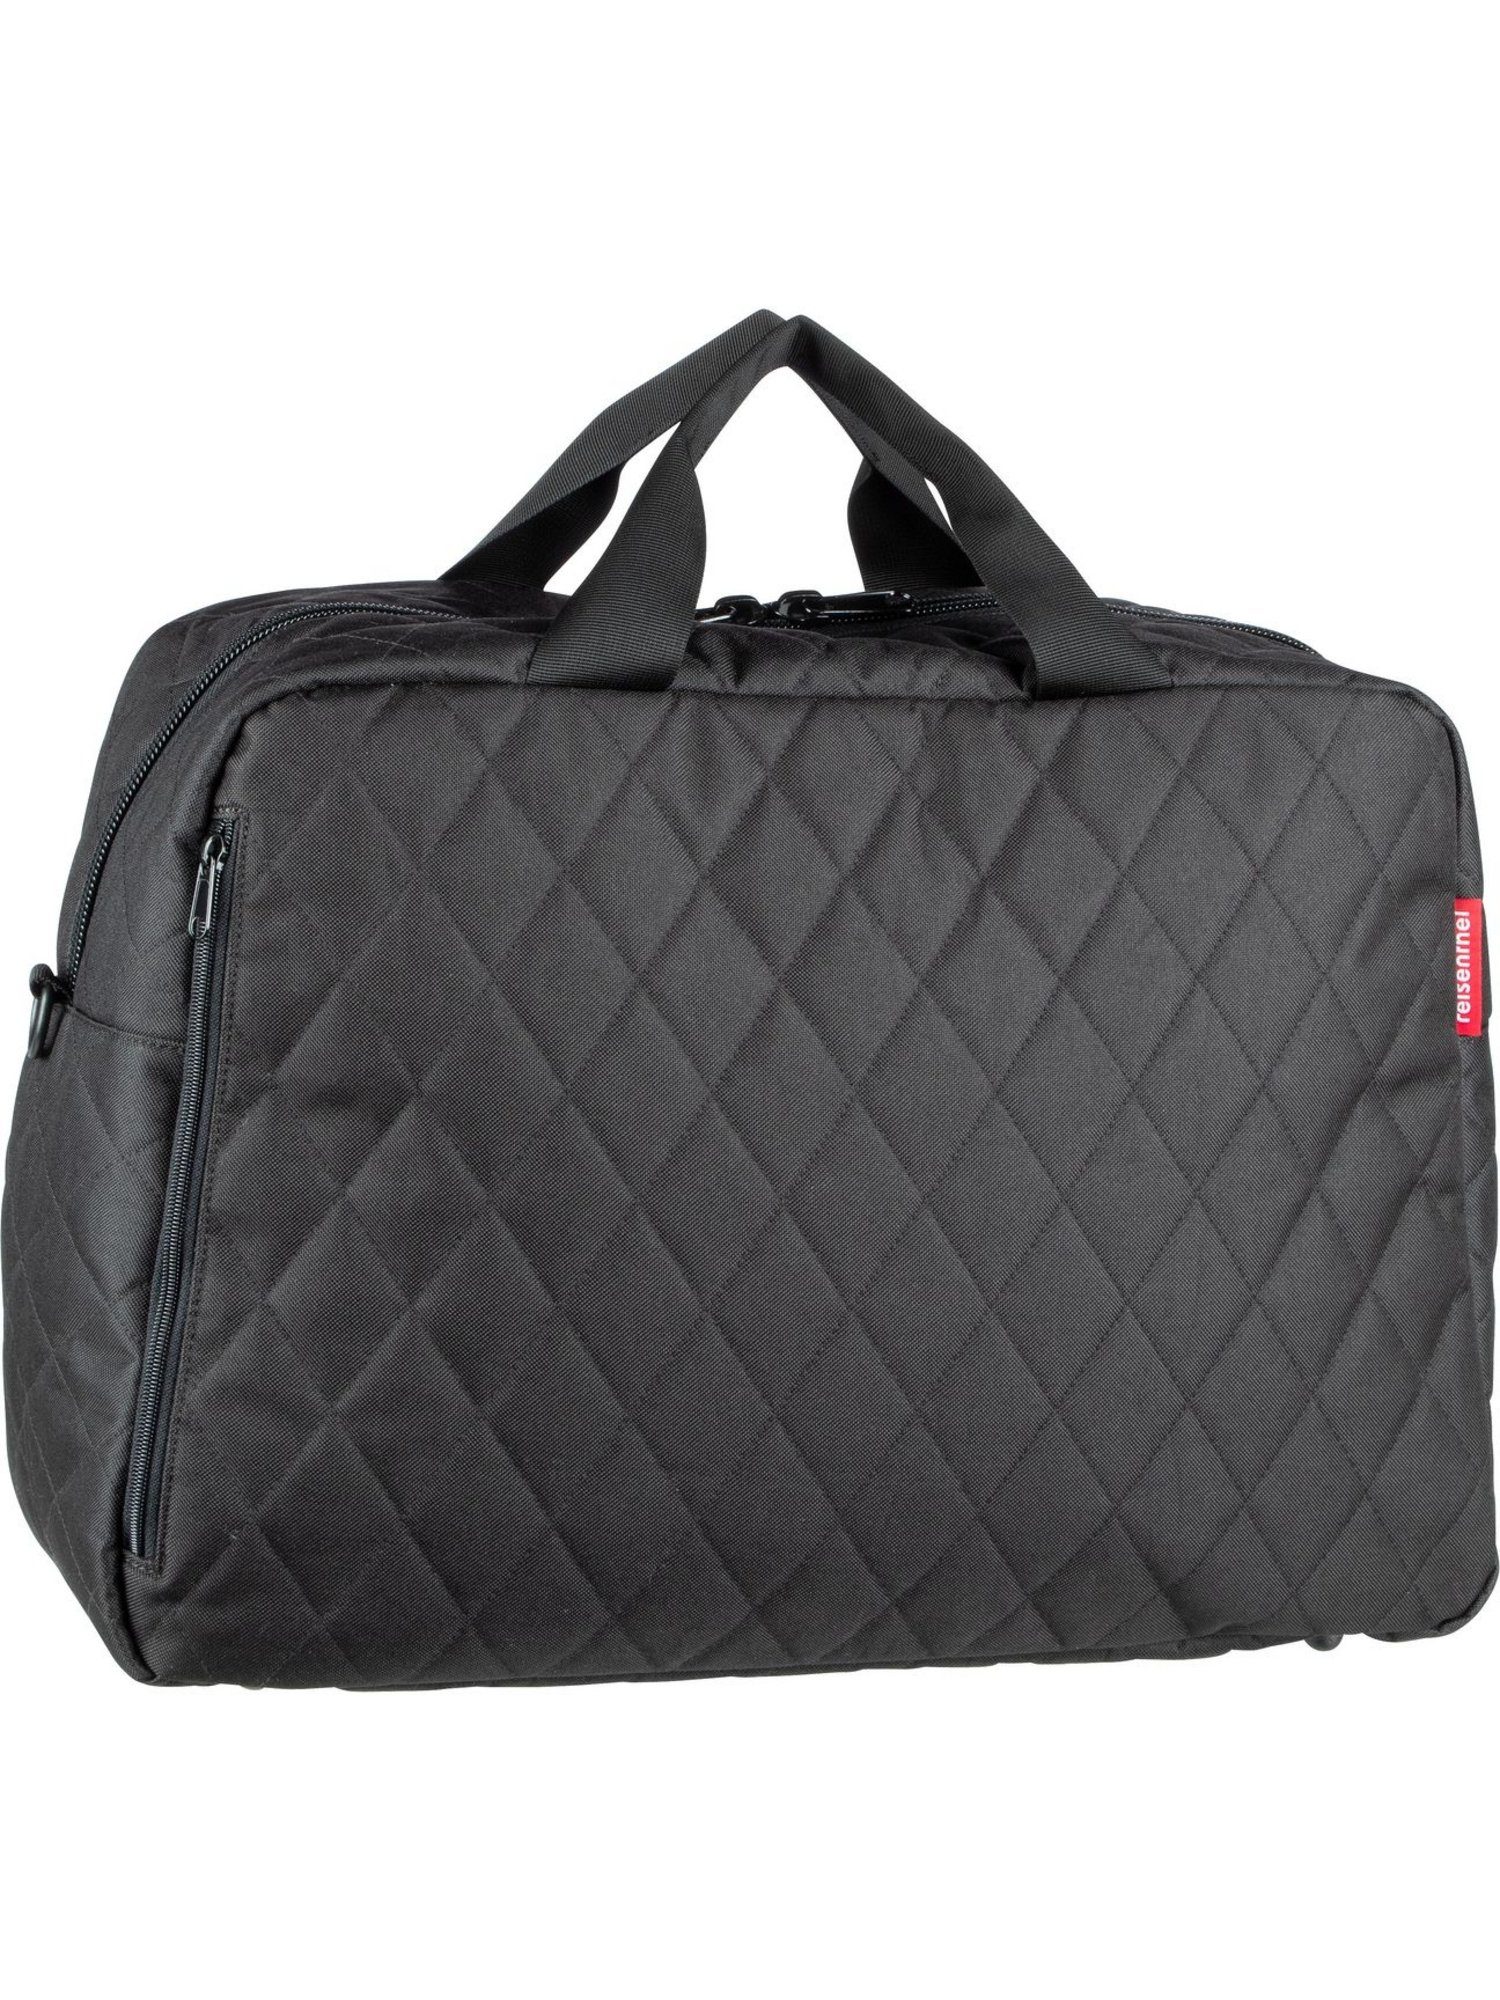 [Neu eingeführt] REISENTHEL® Weekender duffelbag Black Rhombus M